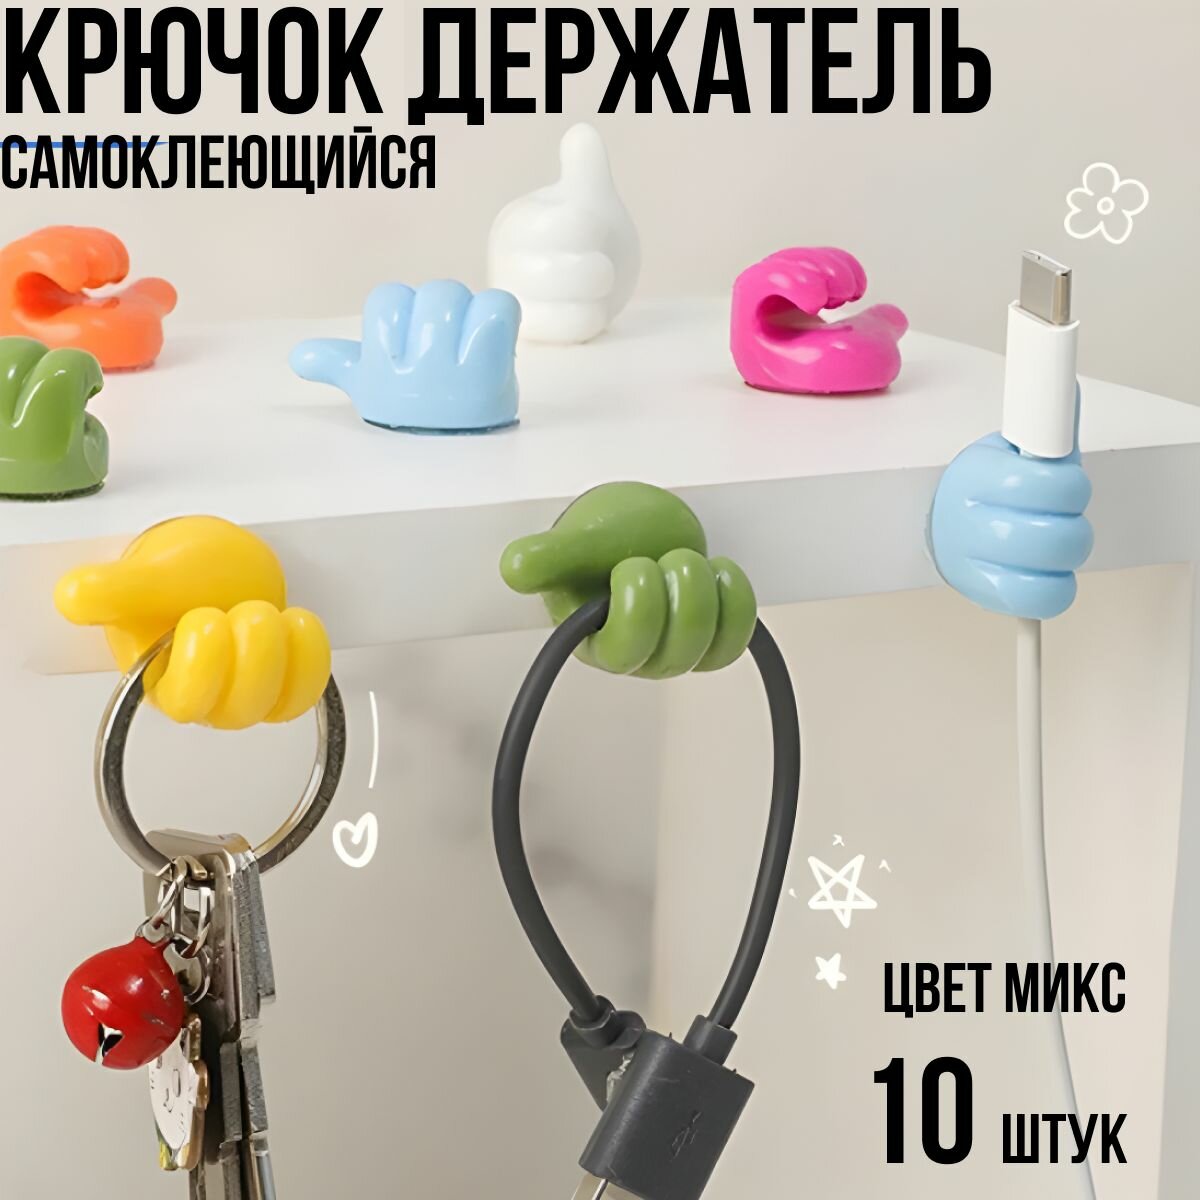 Крючок декоративный самоклеющийся для ванной и кухни / держатель для полотенец, зубных щеток, комнатных цветов; проводов, наушников, очков - набор 10 штук разного цвета